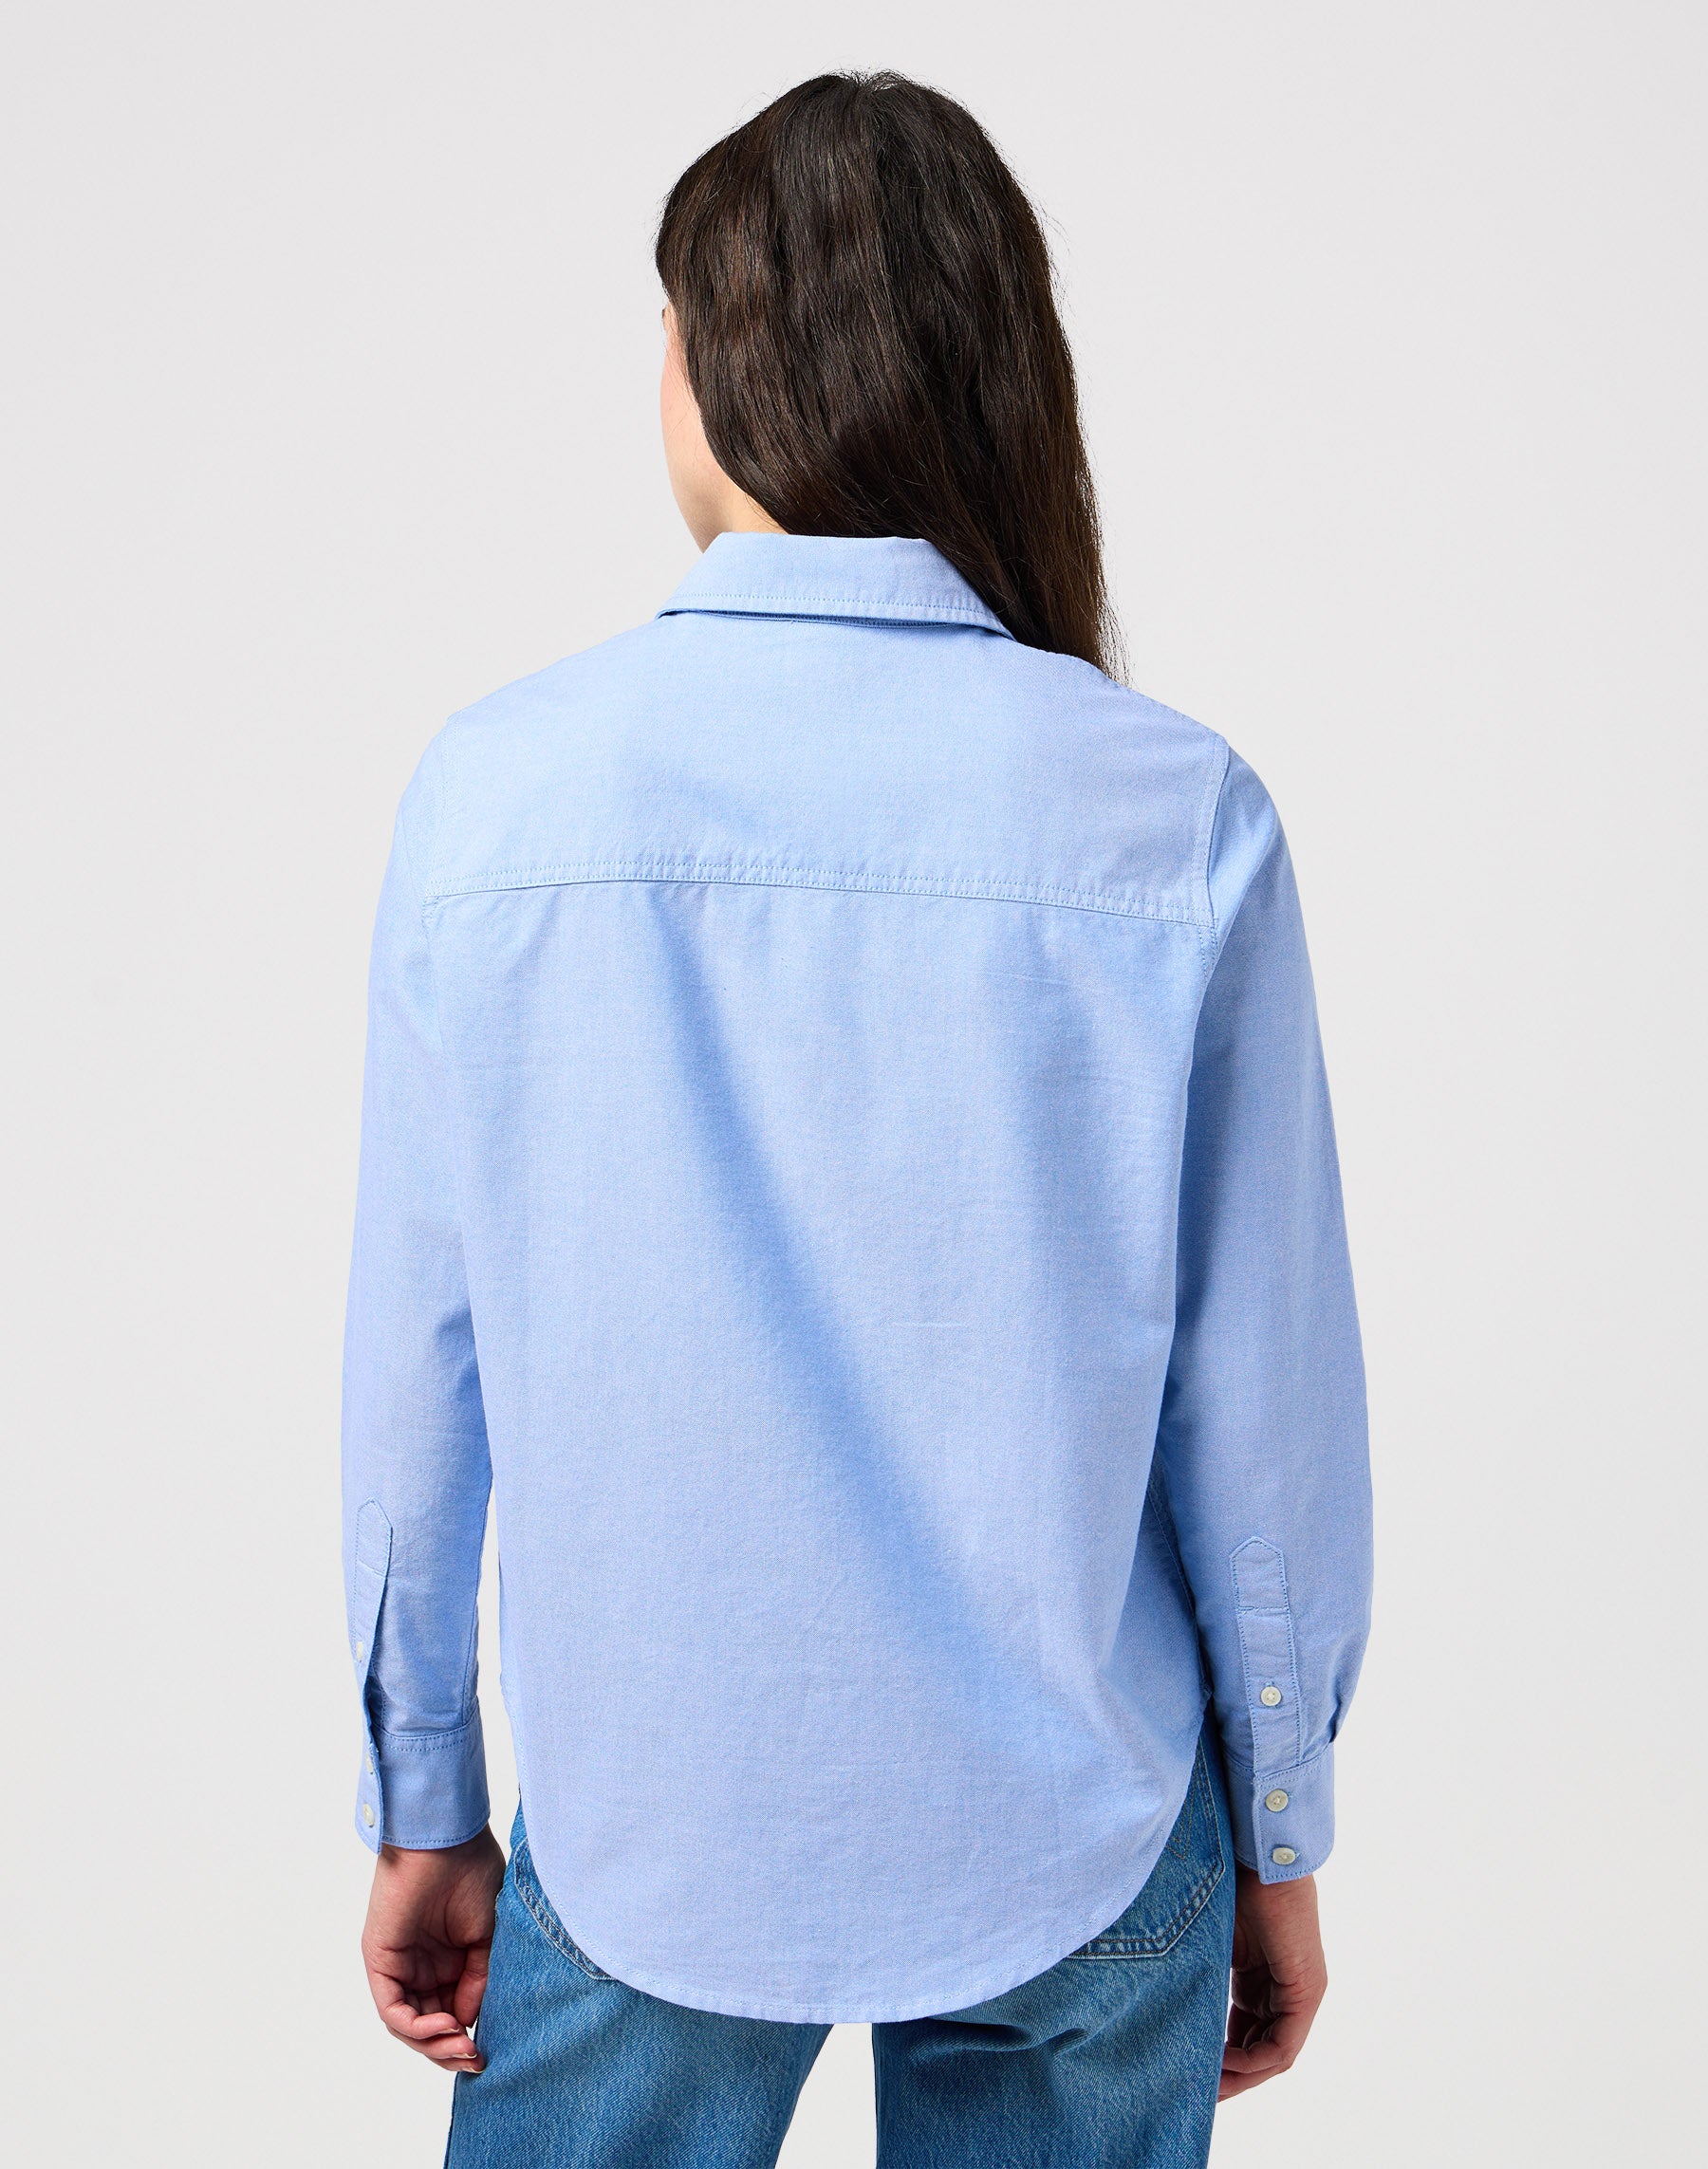 One Pocket Shirt in Bright Blue Hemden Wrangler   